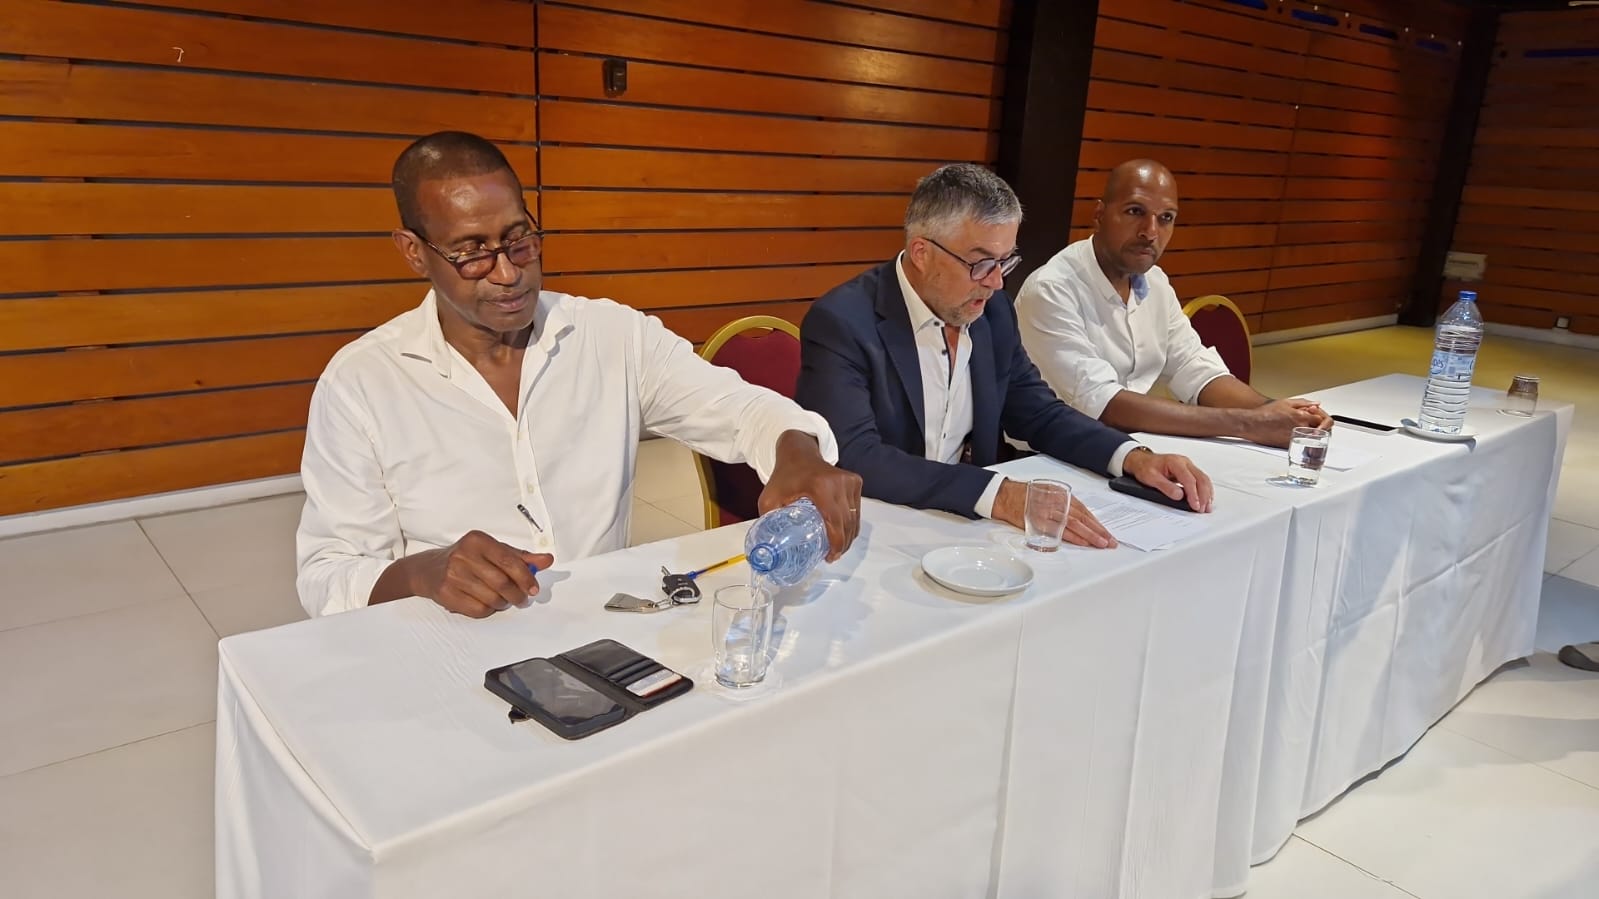     Les problèmes de la Guadeloupe au cœur de la rentrée parlementaire du groupe Liot

